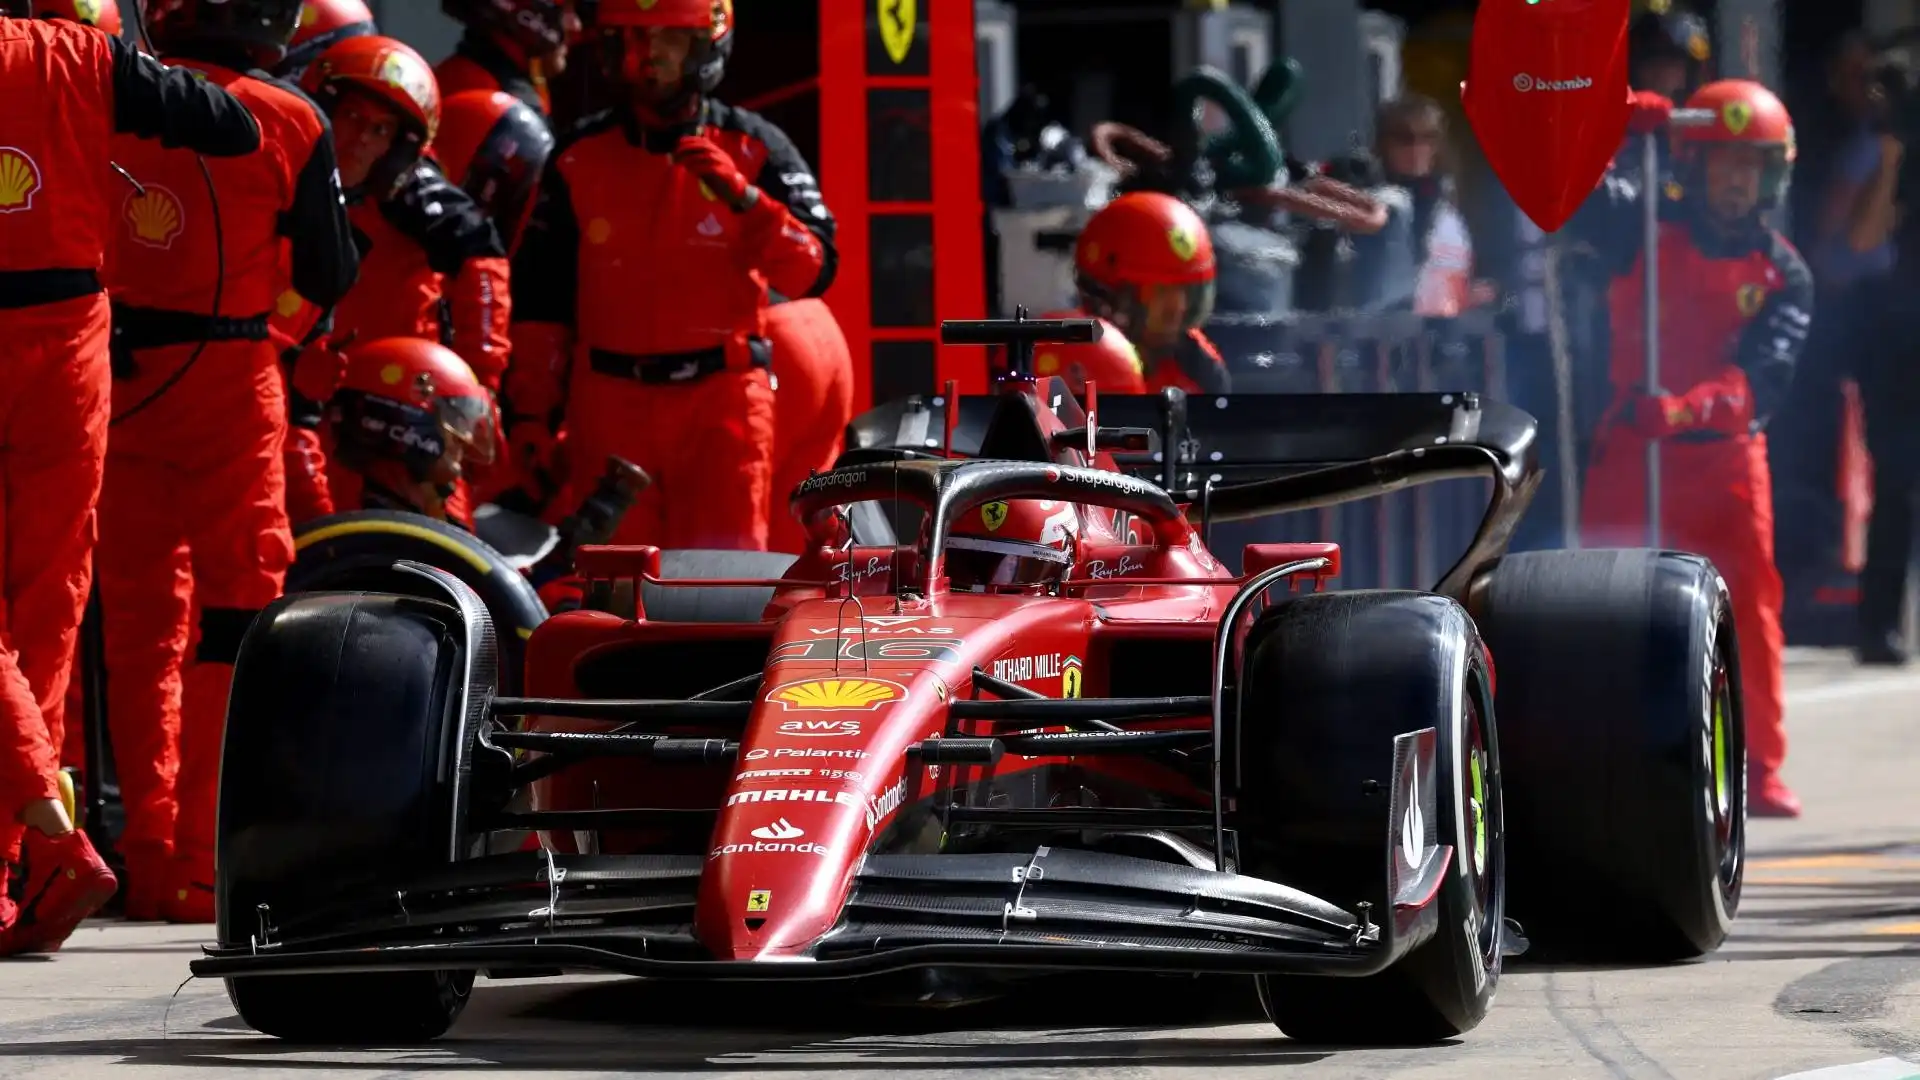 Sul circuito di Silverstone altro ennesimo errore del muretto Ferrari: Charles non viene richiamato ai box per un doppio pit-stop, mentre entra la safety car, e termina quarto. Volano via altri 13 punti